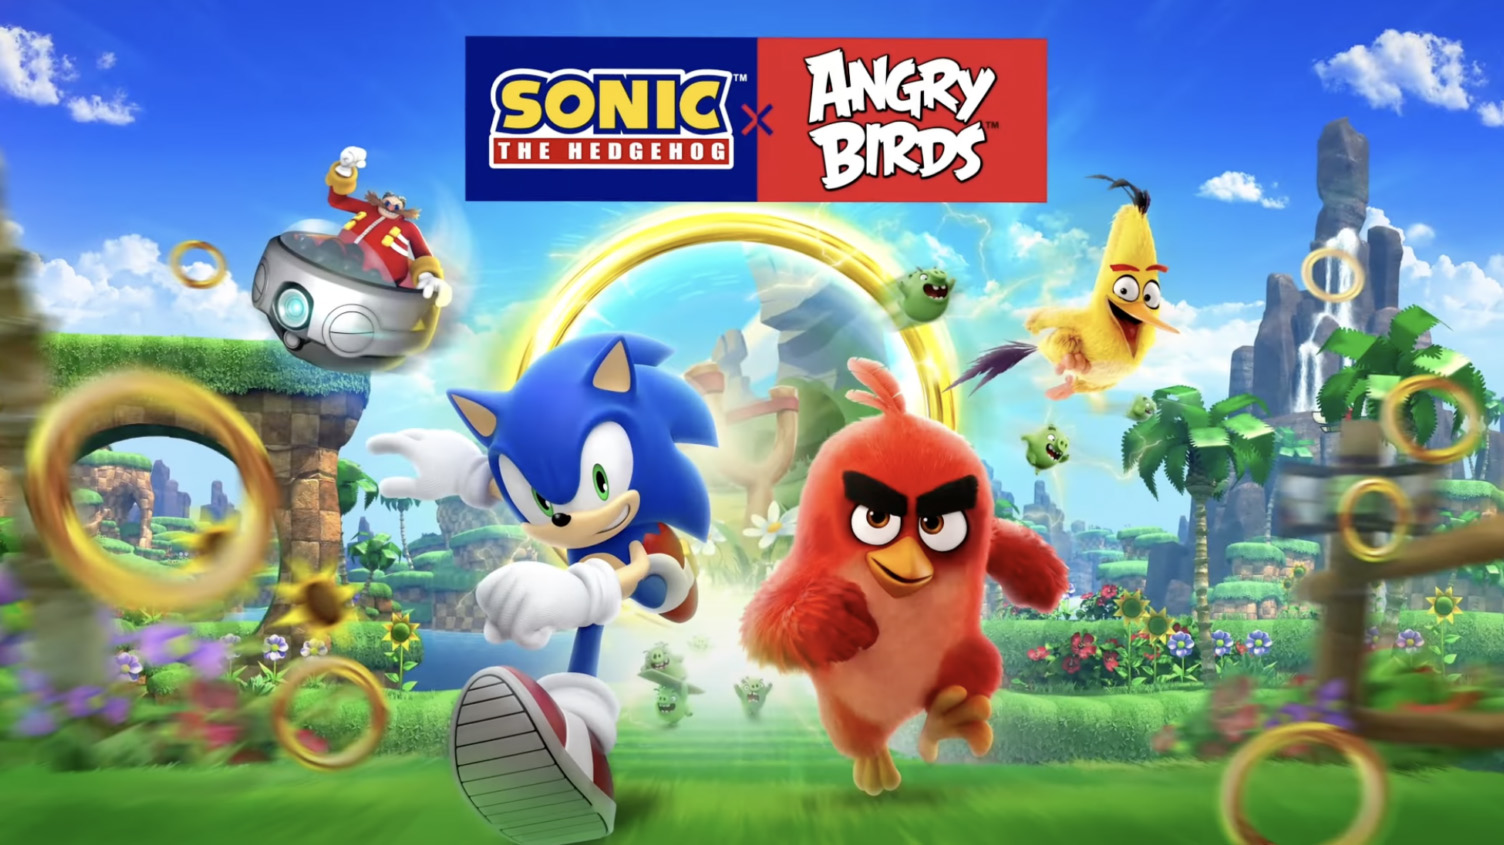 Le crossover Sonic et Angry Birds arrive sur cinq jeux mobiles pendant une semaine